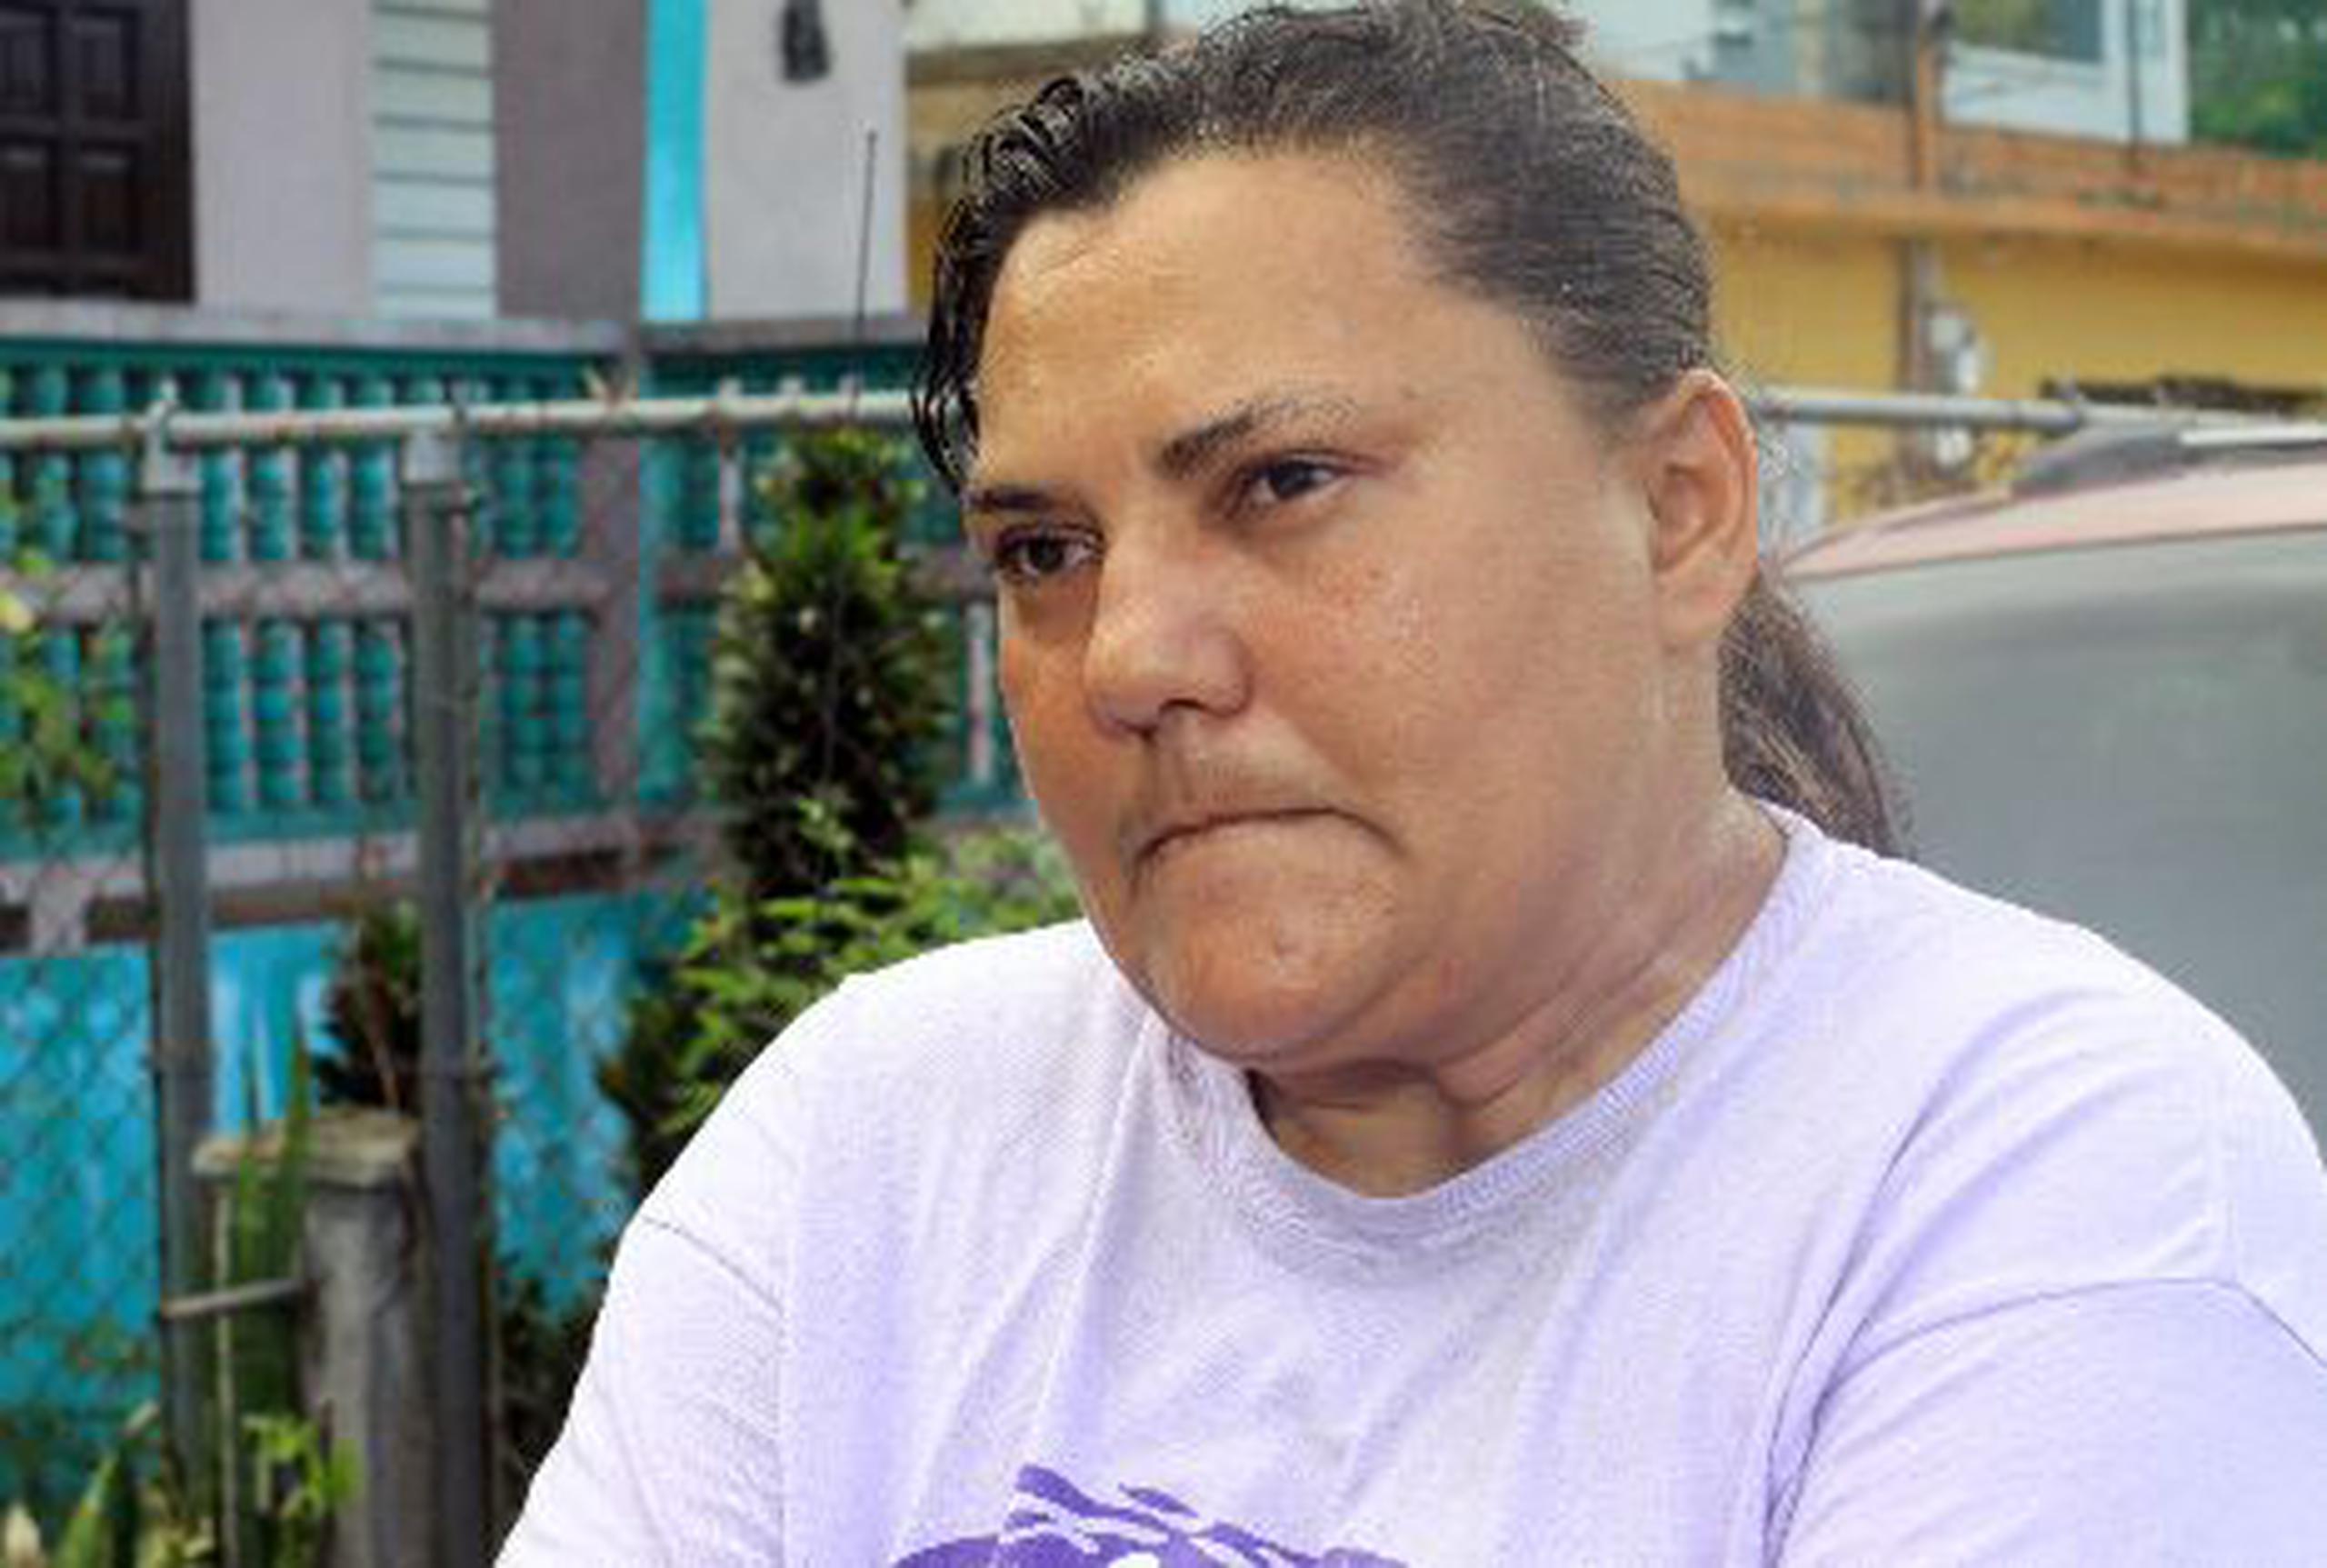 María Ruiz Ortega está consternada por la muerte de su hermana  tras relatar que el martes en la tarde la dejó  frente al comité del alcalde de Manatí. <font color="yellow">(Para Primera Hora / Nelson Reyes Faría)</font>